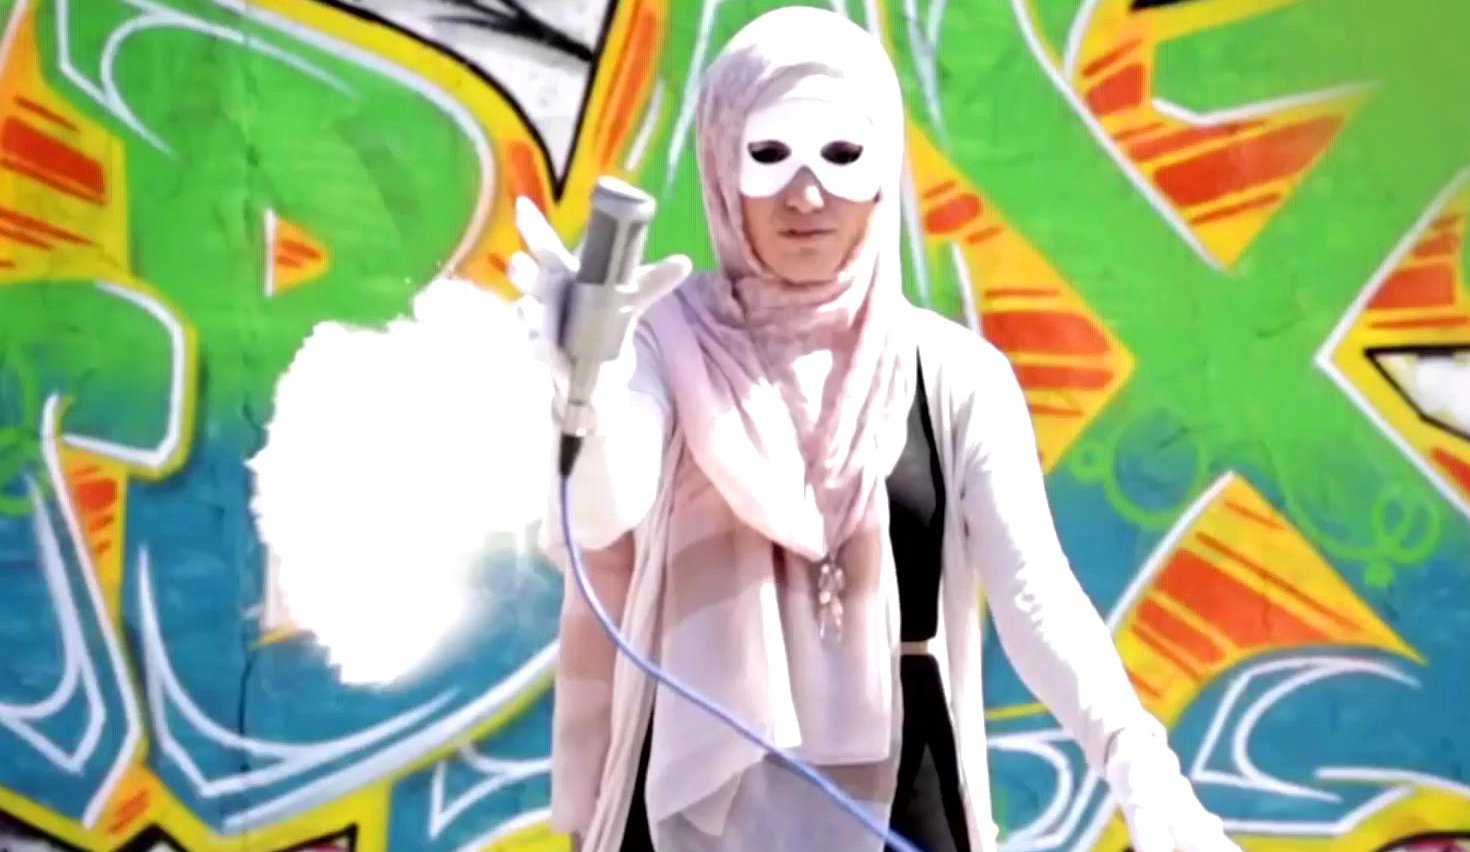 Muslimischer Videoblog i,Slam auf YouTube, 2015.